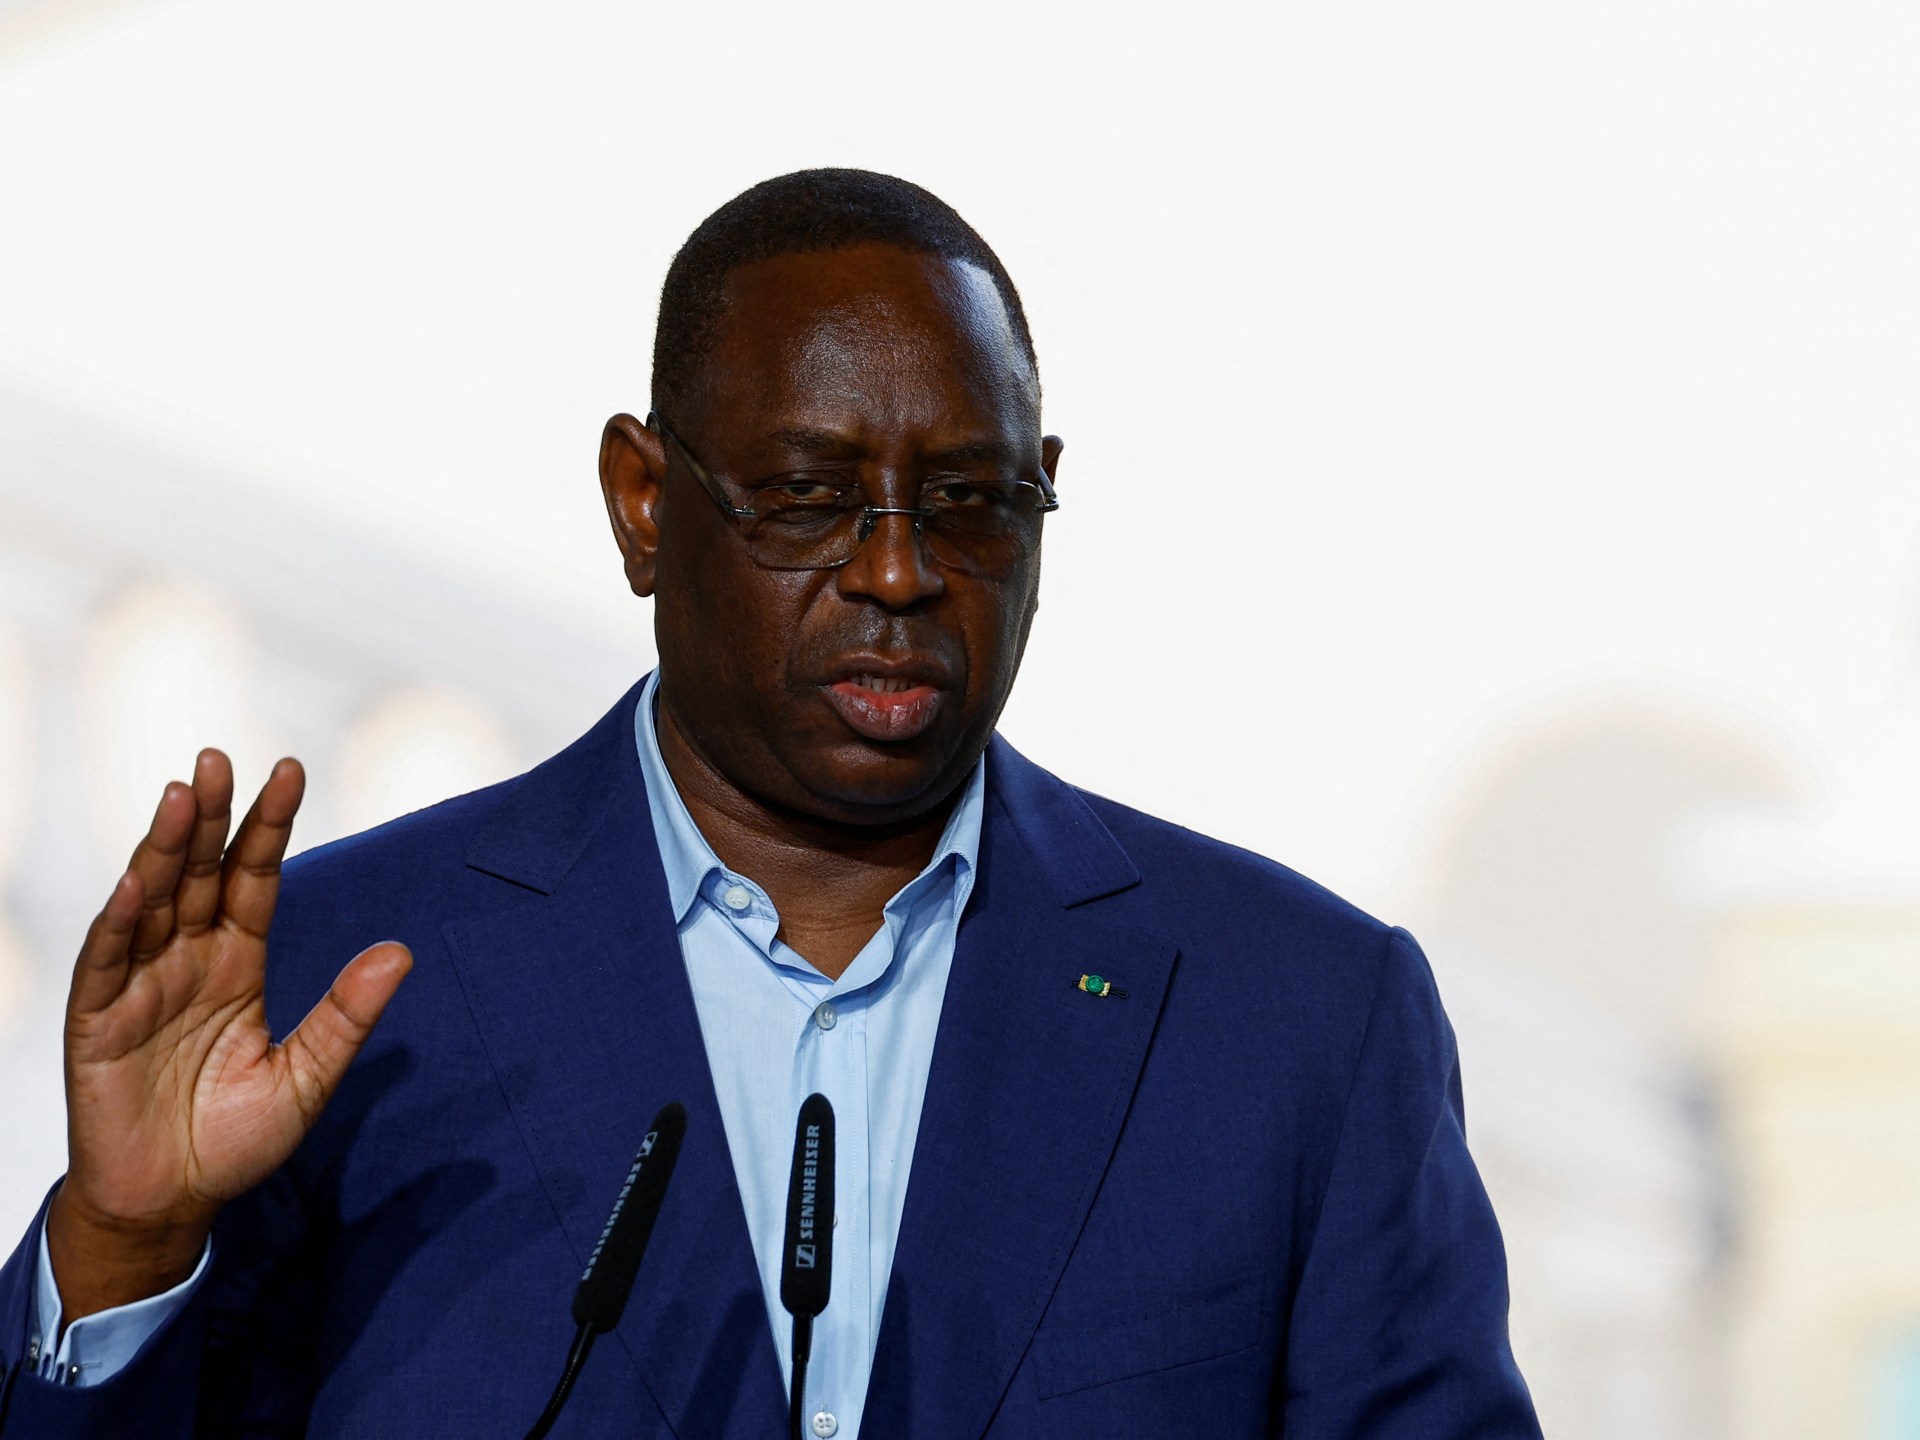 Der Senegalese Macky Sall verschiebt die Präsidentschaftswahlen  Wahlnachrichten